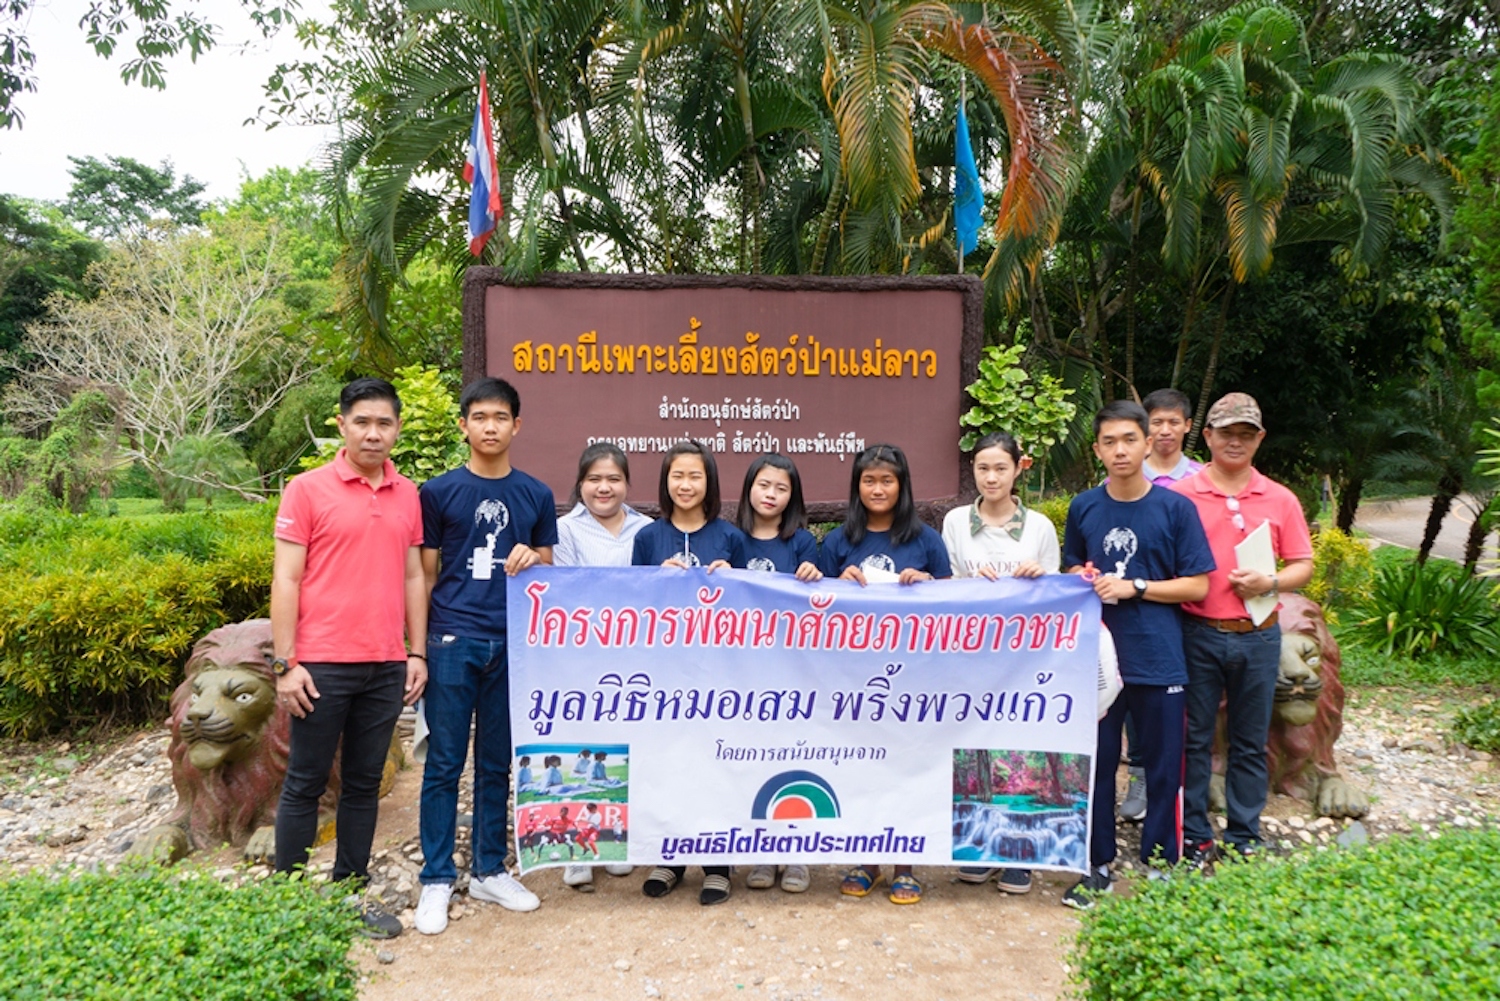 มูลนิธิโตโยต้า ร่วมกับมูลนิธิหมอเสม  จัดค่ายพัฒนาศักยภาพเยาวชน  ยกระดับคุณภาพชีวิตให้แก่สังคมไทย